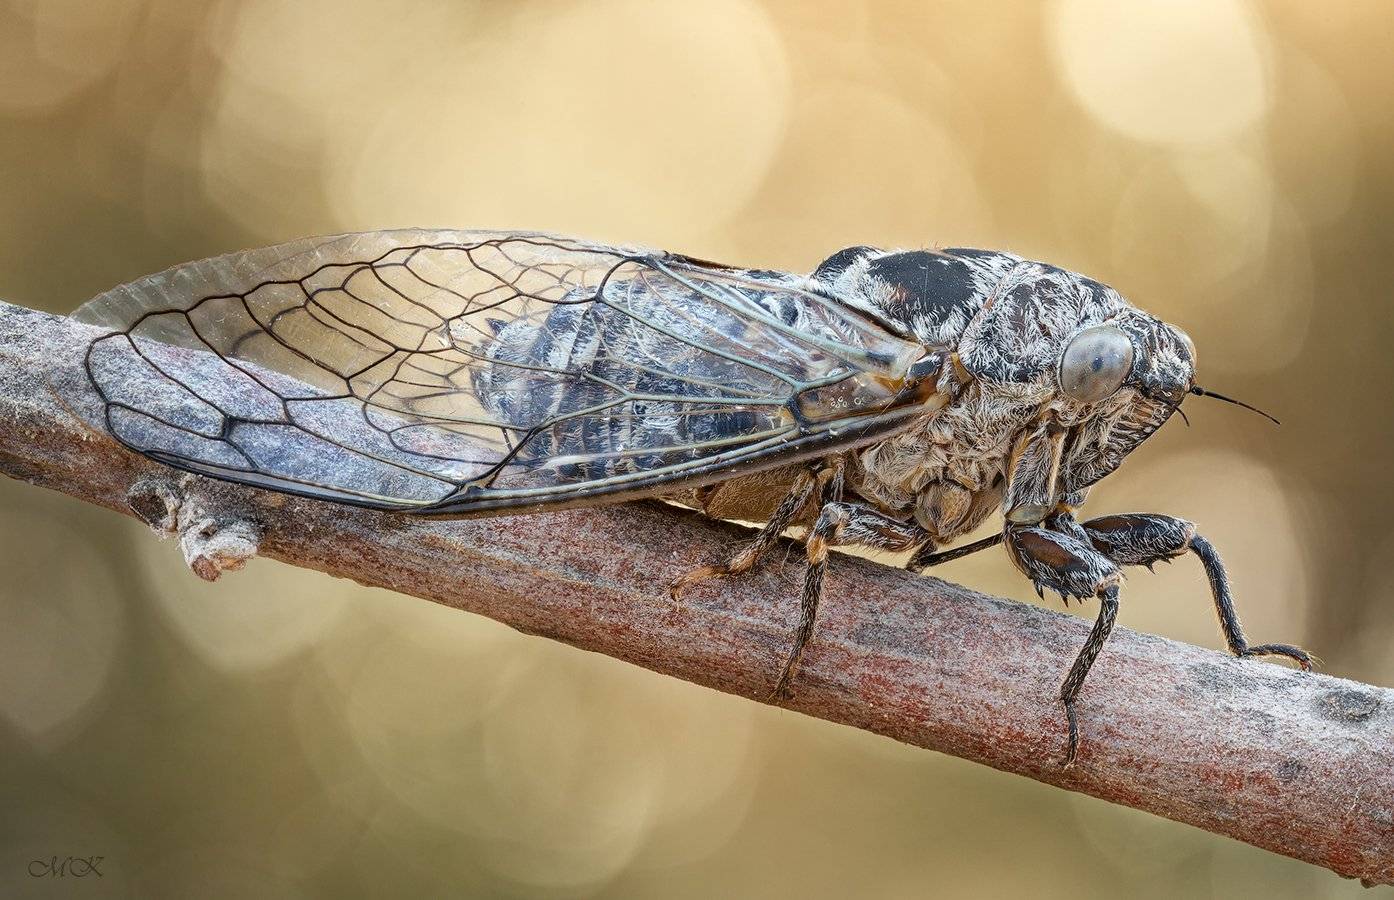 Певчие цикады: описание насекомого, среда обитания, питание, жизненный цикл